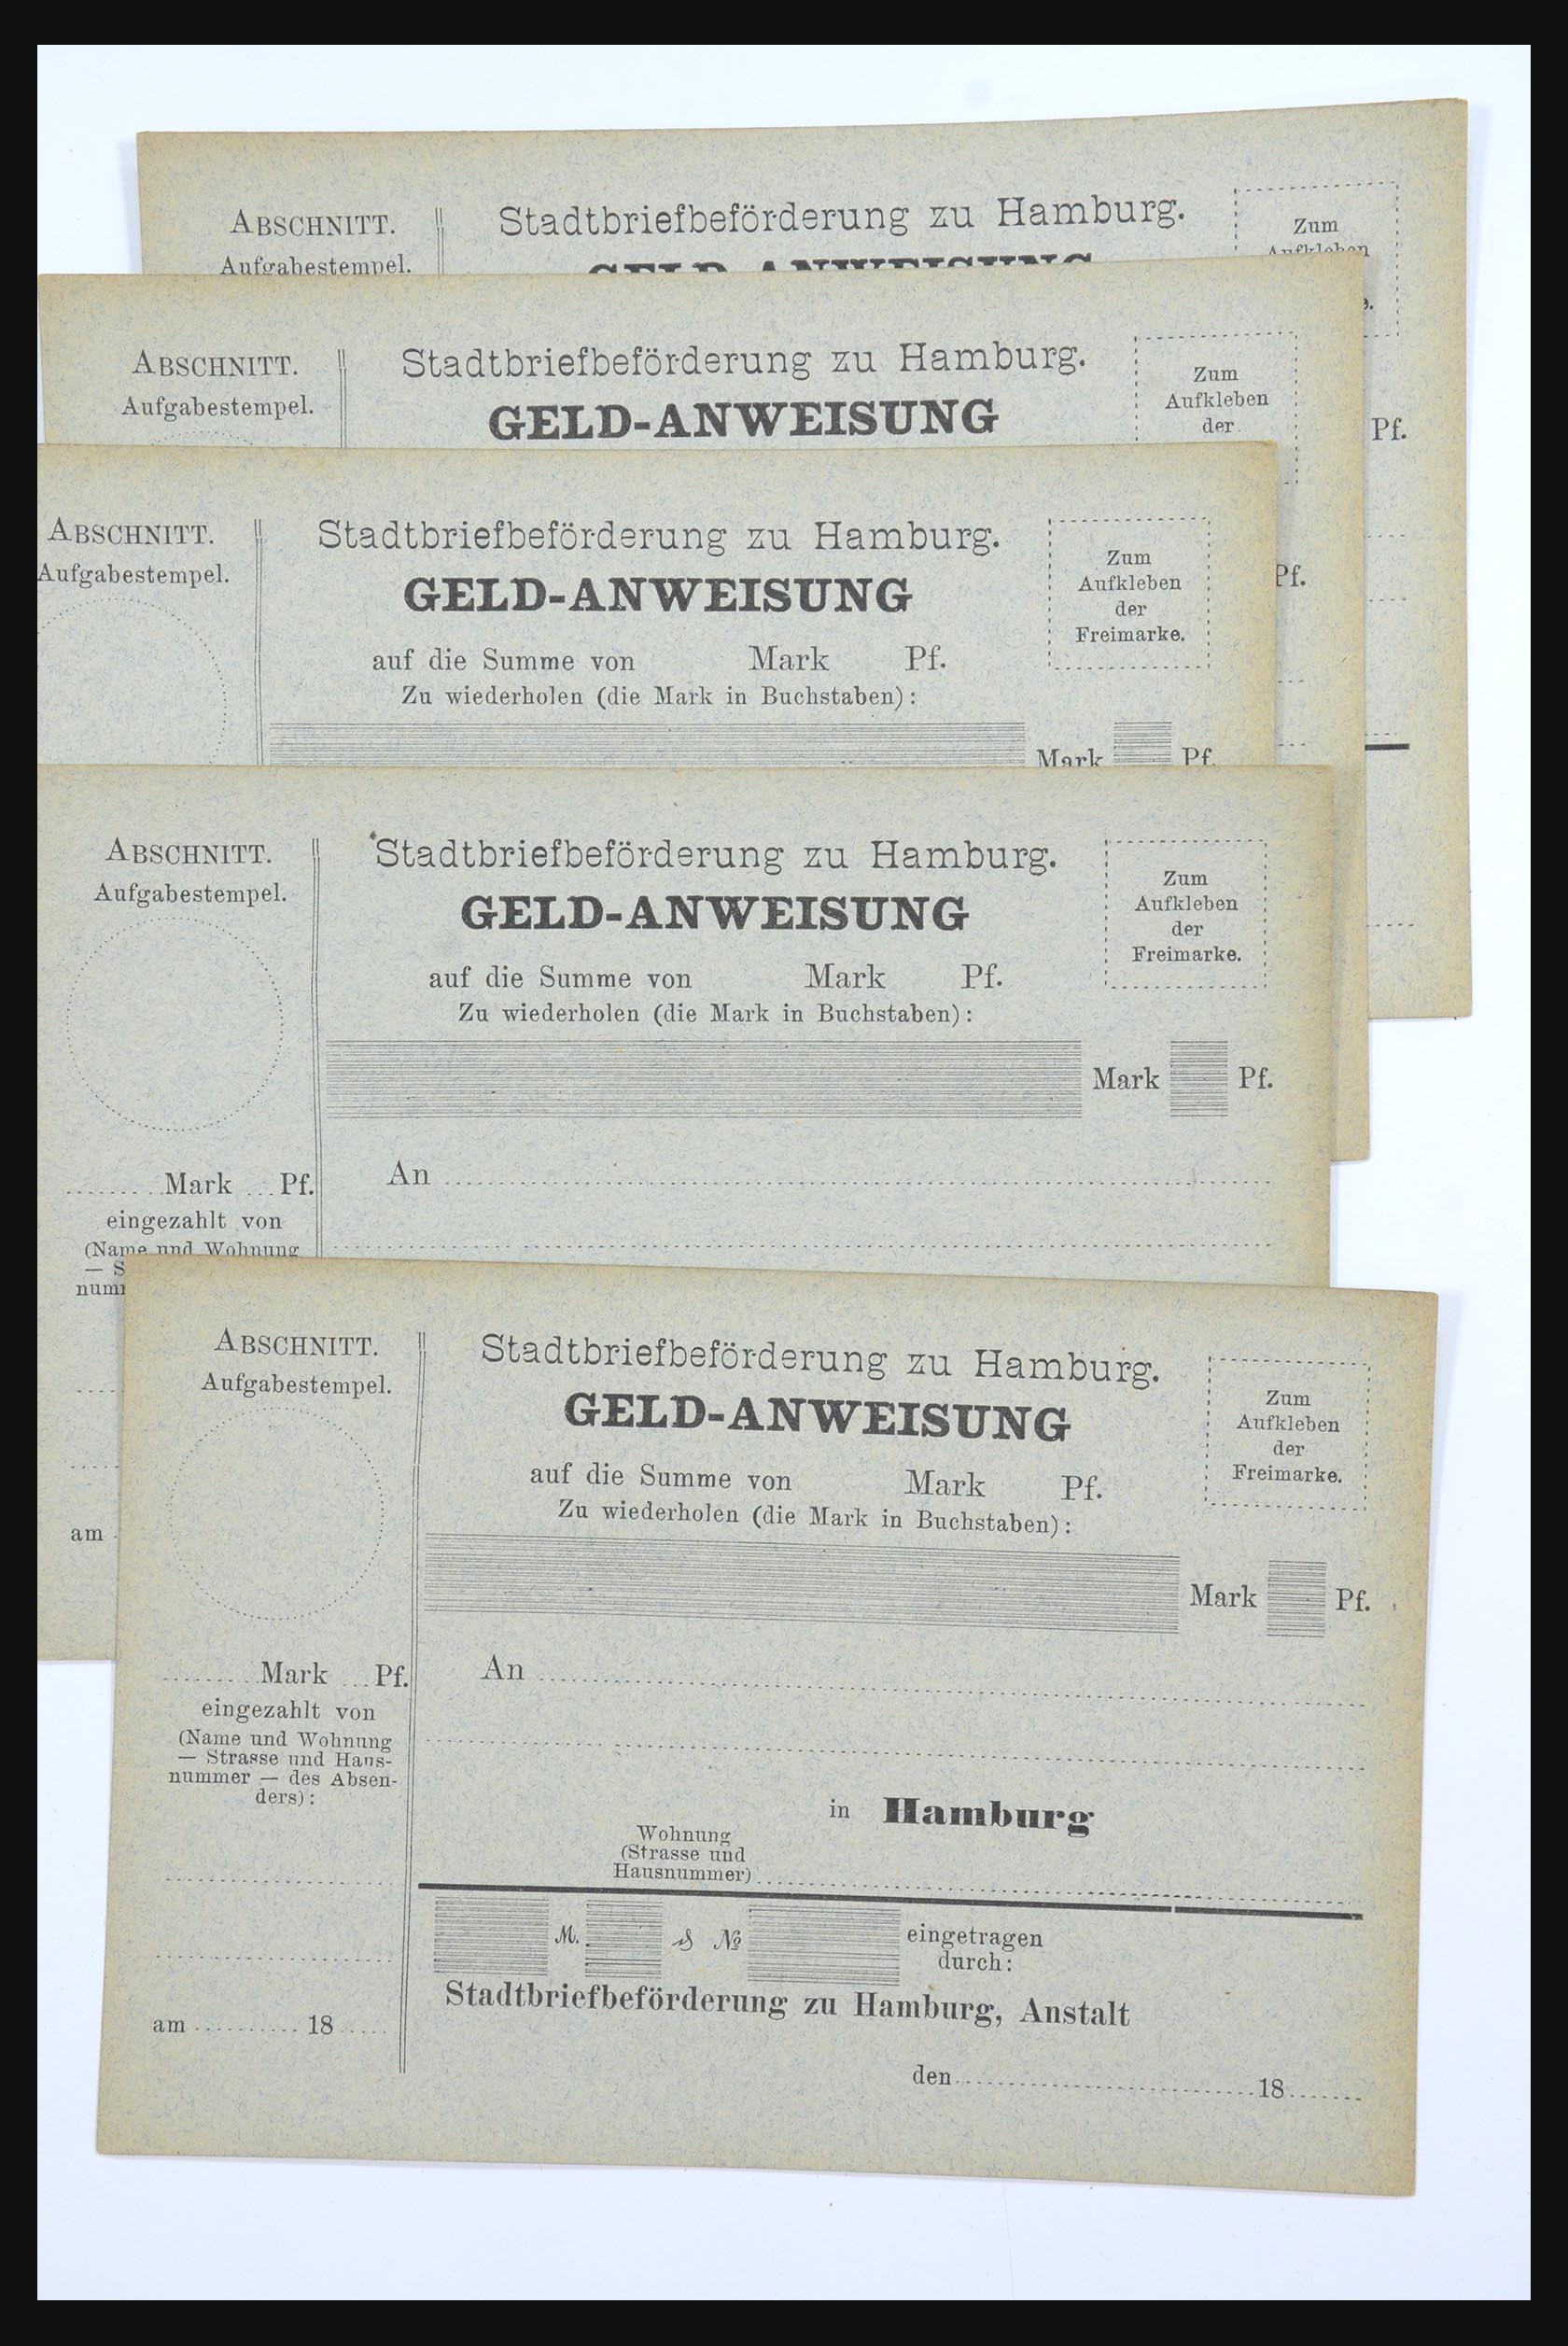 31578 263 - 31578 Germany localpost 1861-1900.